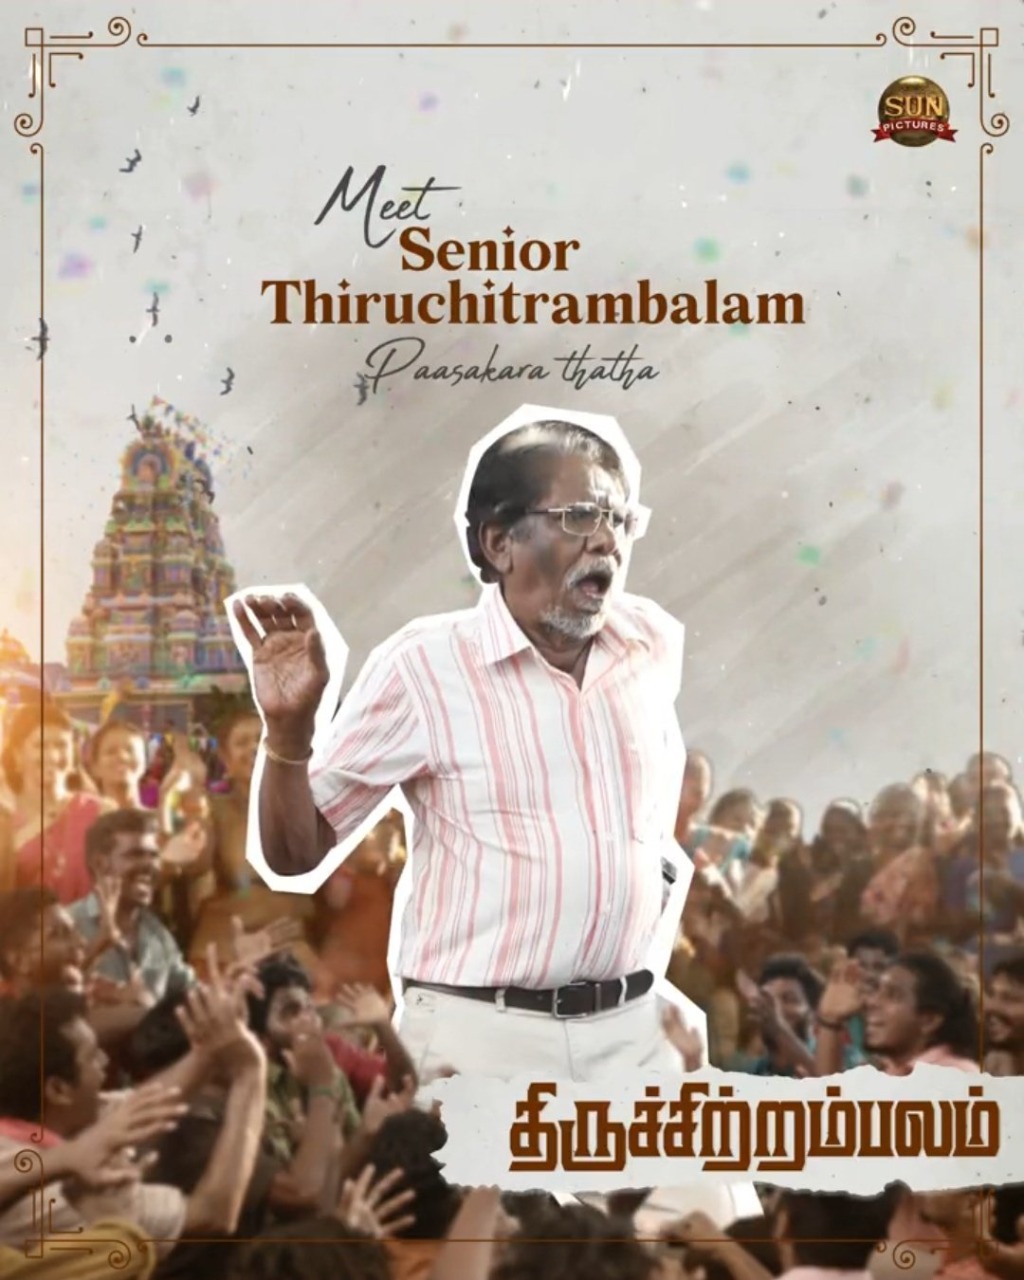 Thiruchitrambalam Bharathi Raja Character Look Poster Released